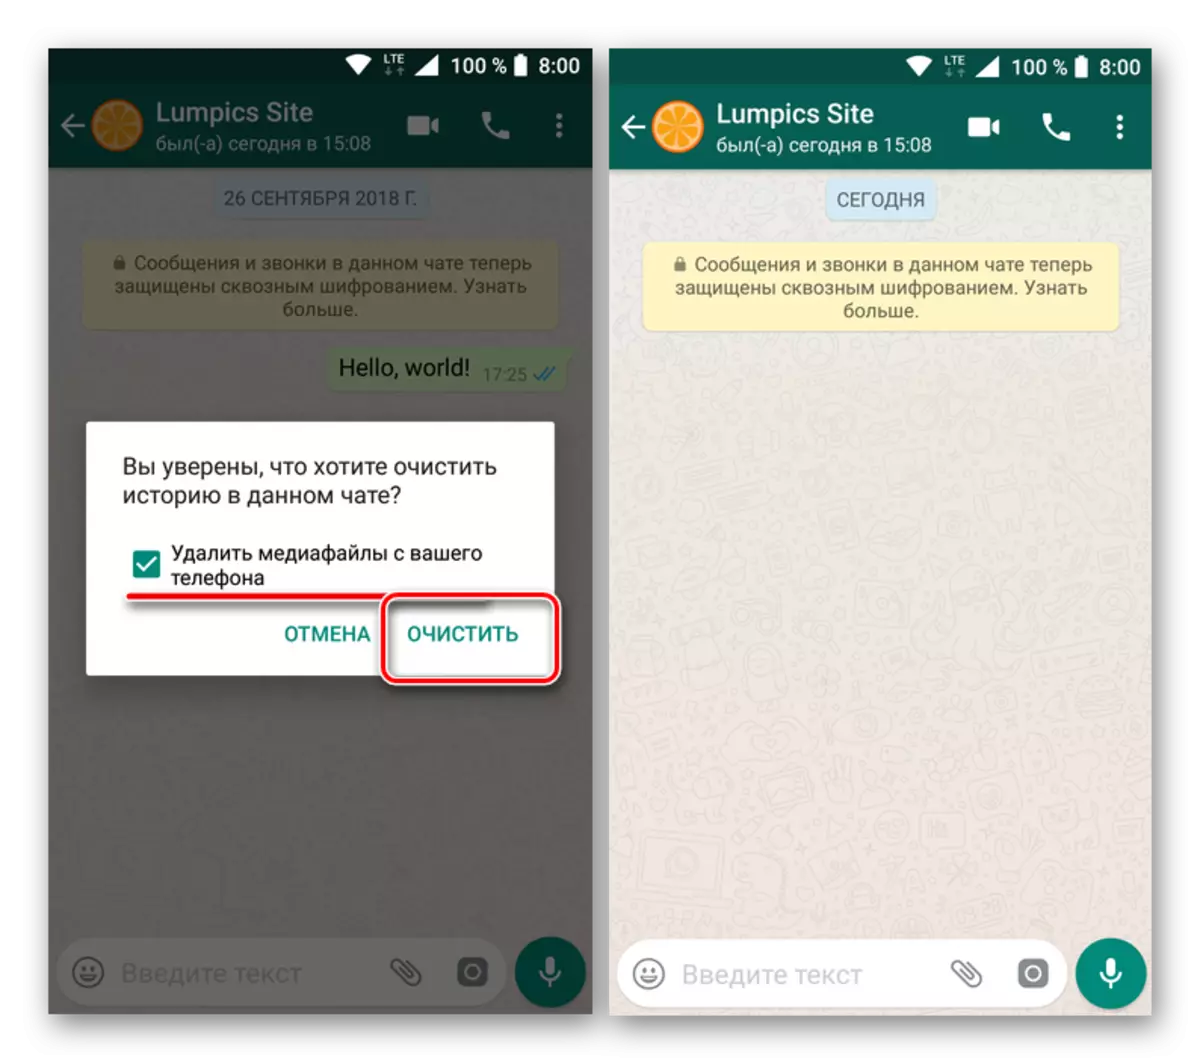 การยืนยันการล้างการทำความสะอาดจากไฟล์ข้อความและไฟล์สื่อในแอปพลิเคชัน WhatsApp สำหรับ Android